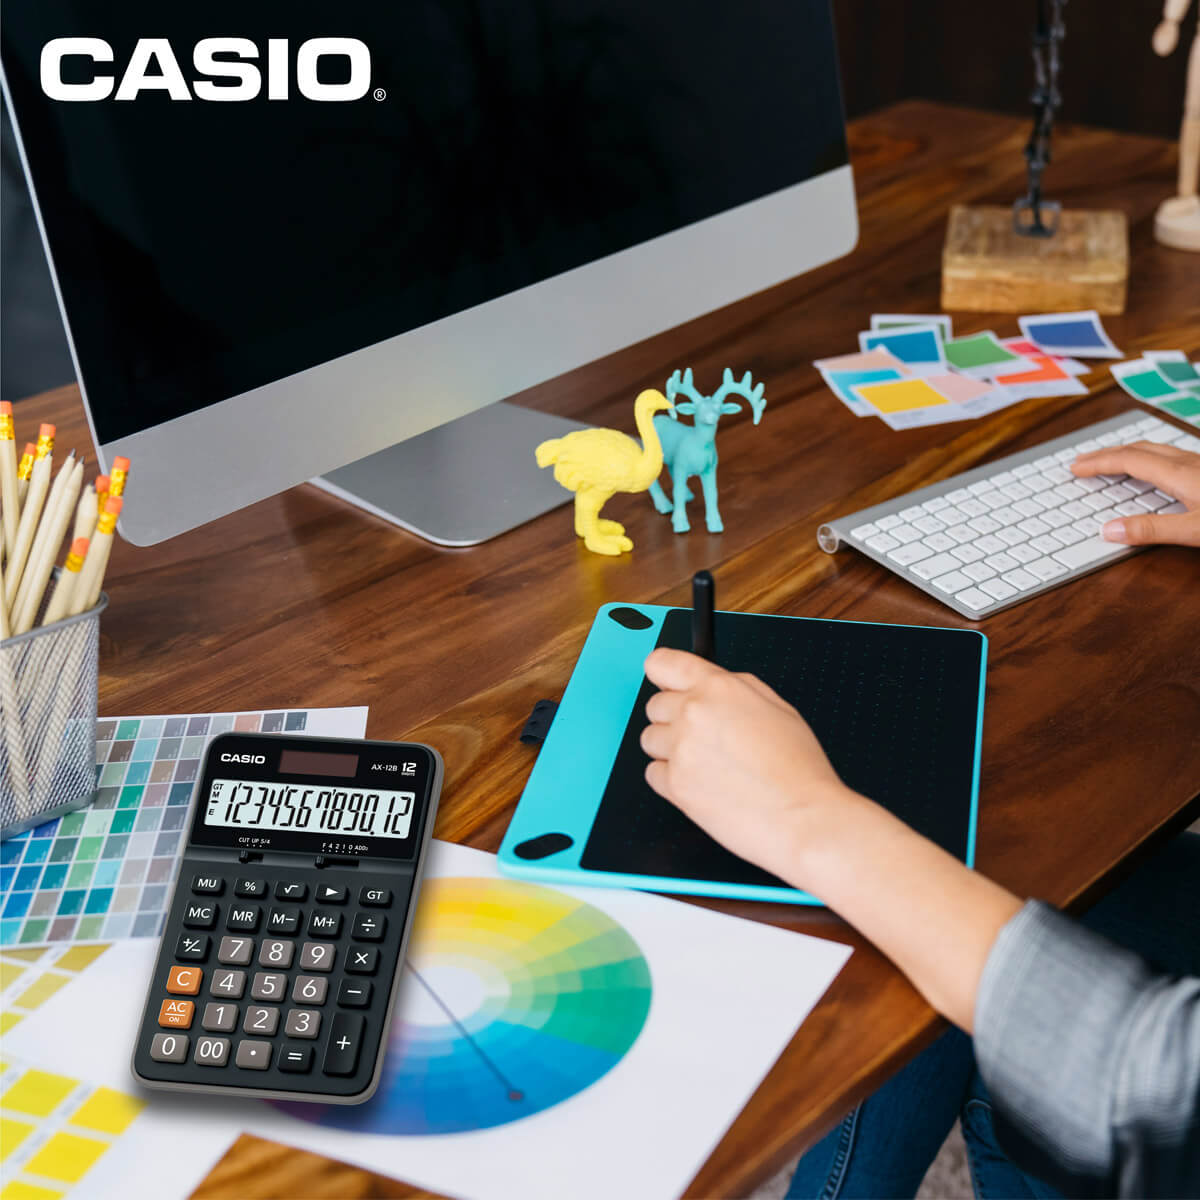 Calculadora Casio de escritorio de la serie 120B que te permite hacer cálculos de tipo ordinario en tu lugar de trabajo. Diseño ergonómico, bordes curvos y gran pantalla de 12 dígitos, cuenta con Gran Total y selectores de decimales y redondeo de acuerdo a tus necesidades.